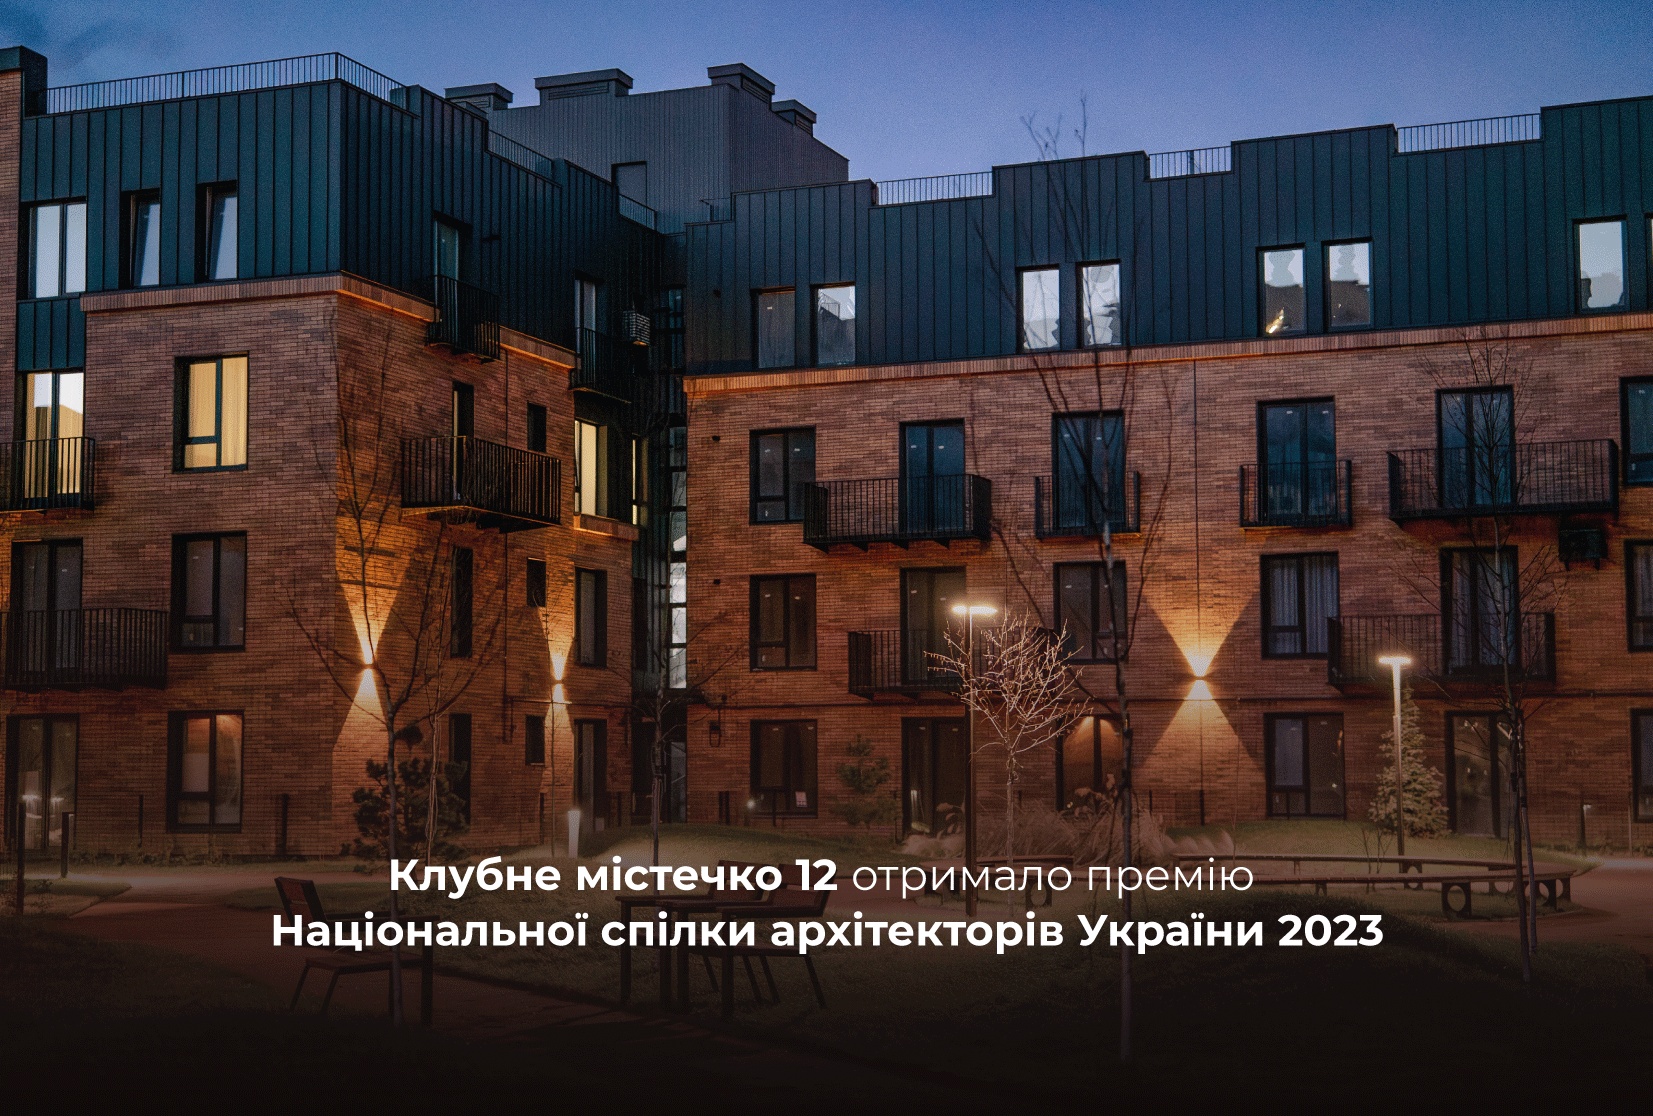 Франківський житловий комплекс отримав премію Національної спілки архітекторів України